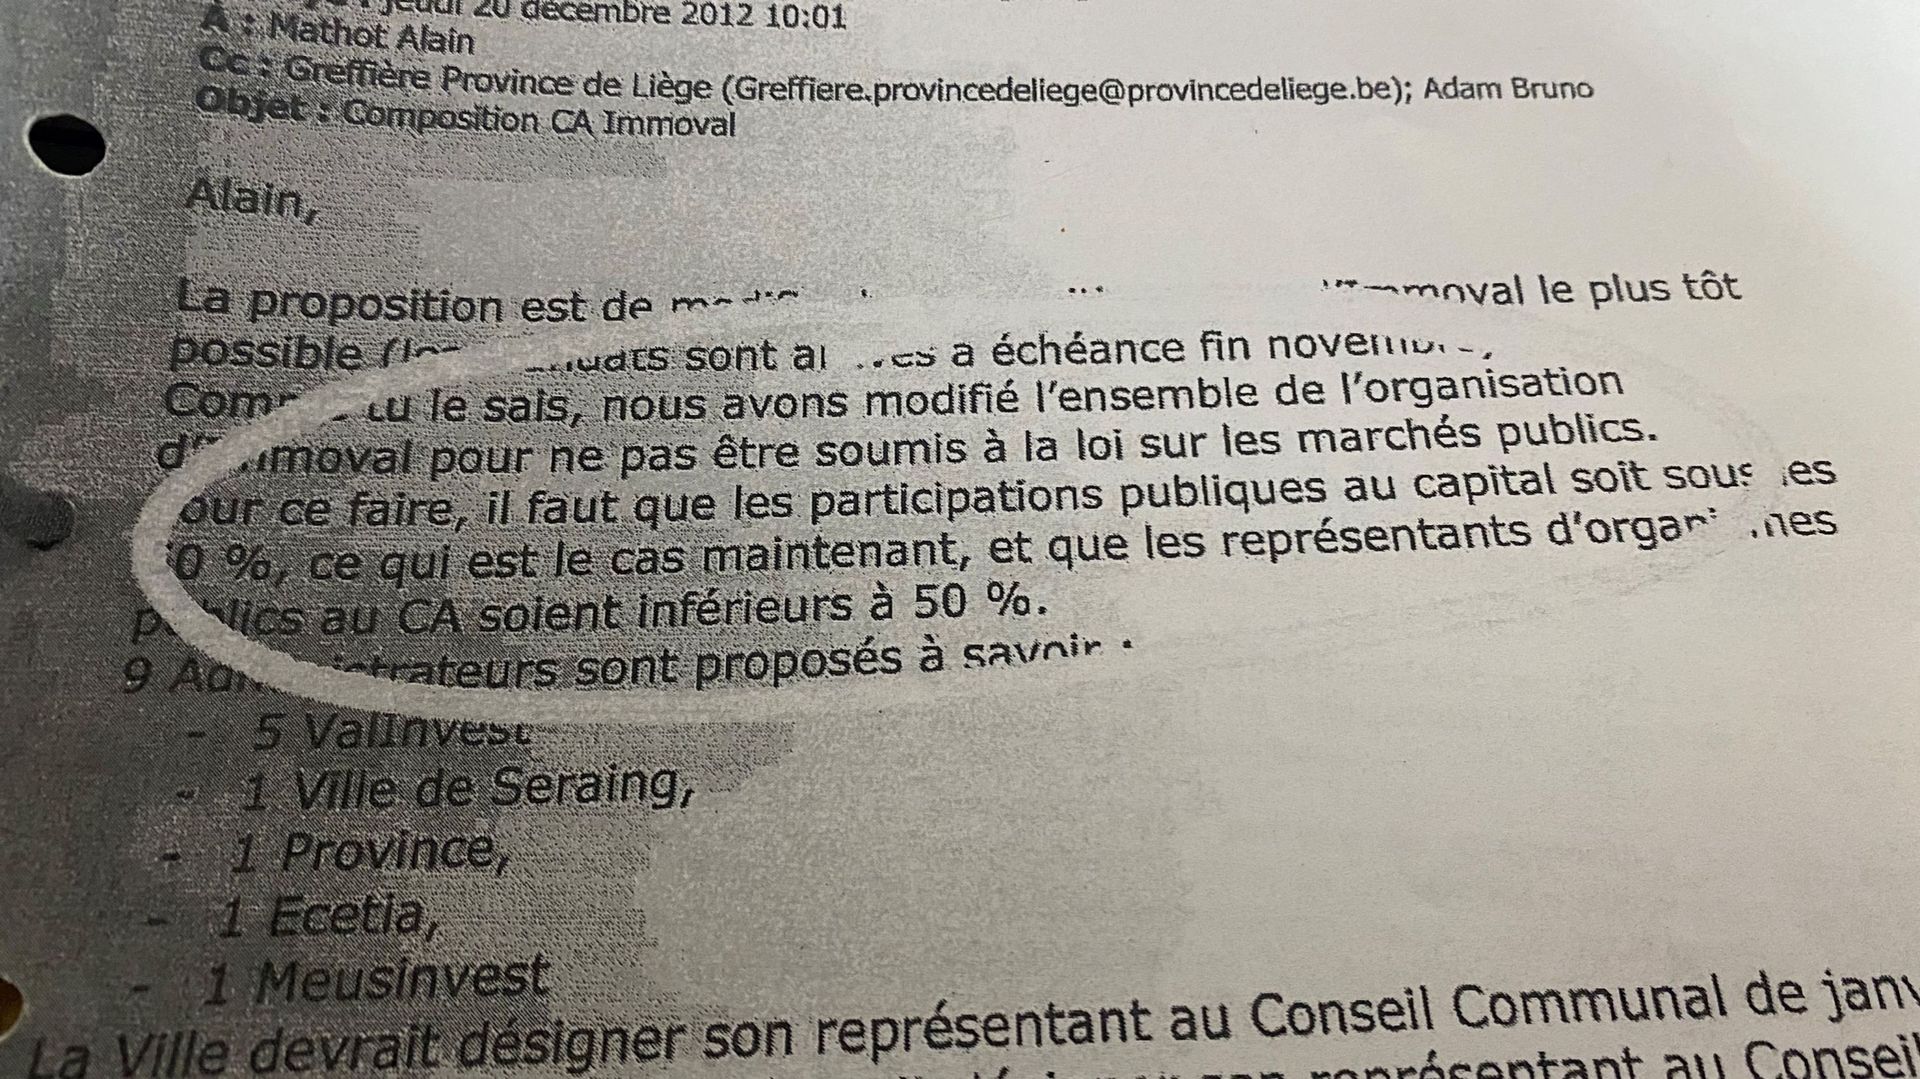 Le courriel de Jean-Luc Pluymers à Alain Mathot en décembre 